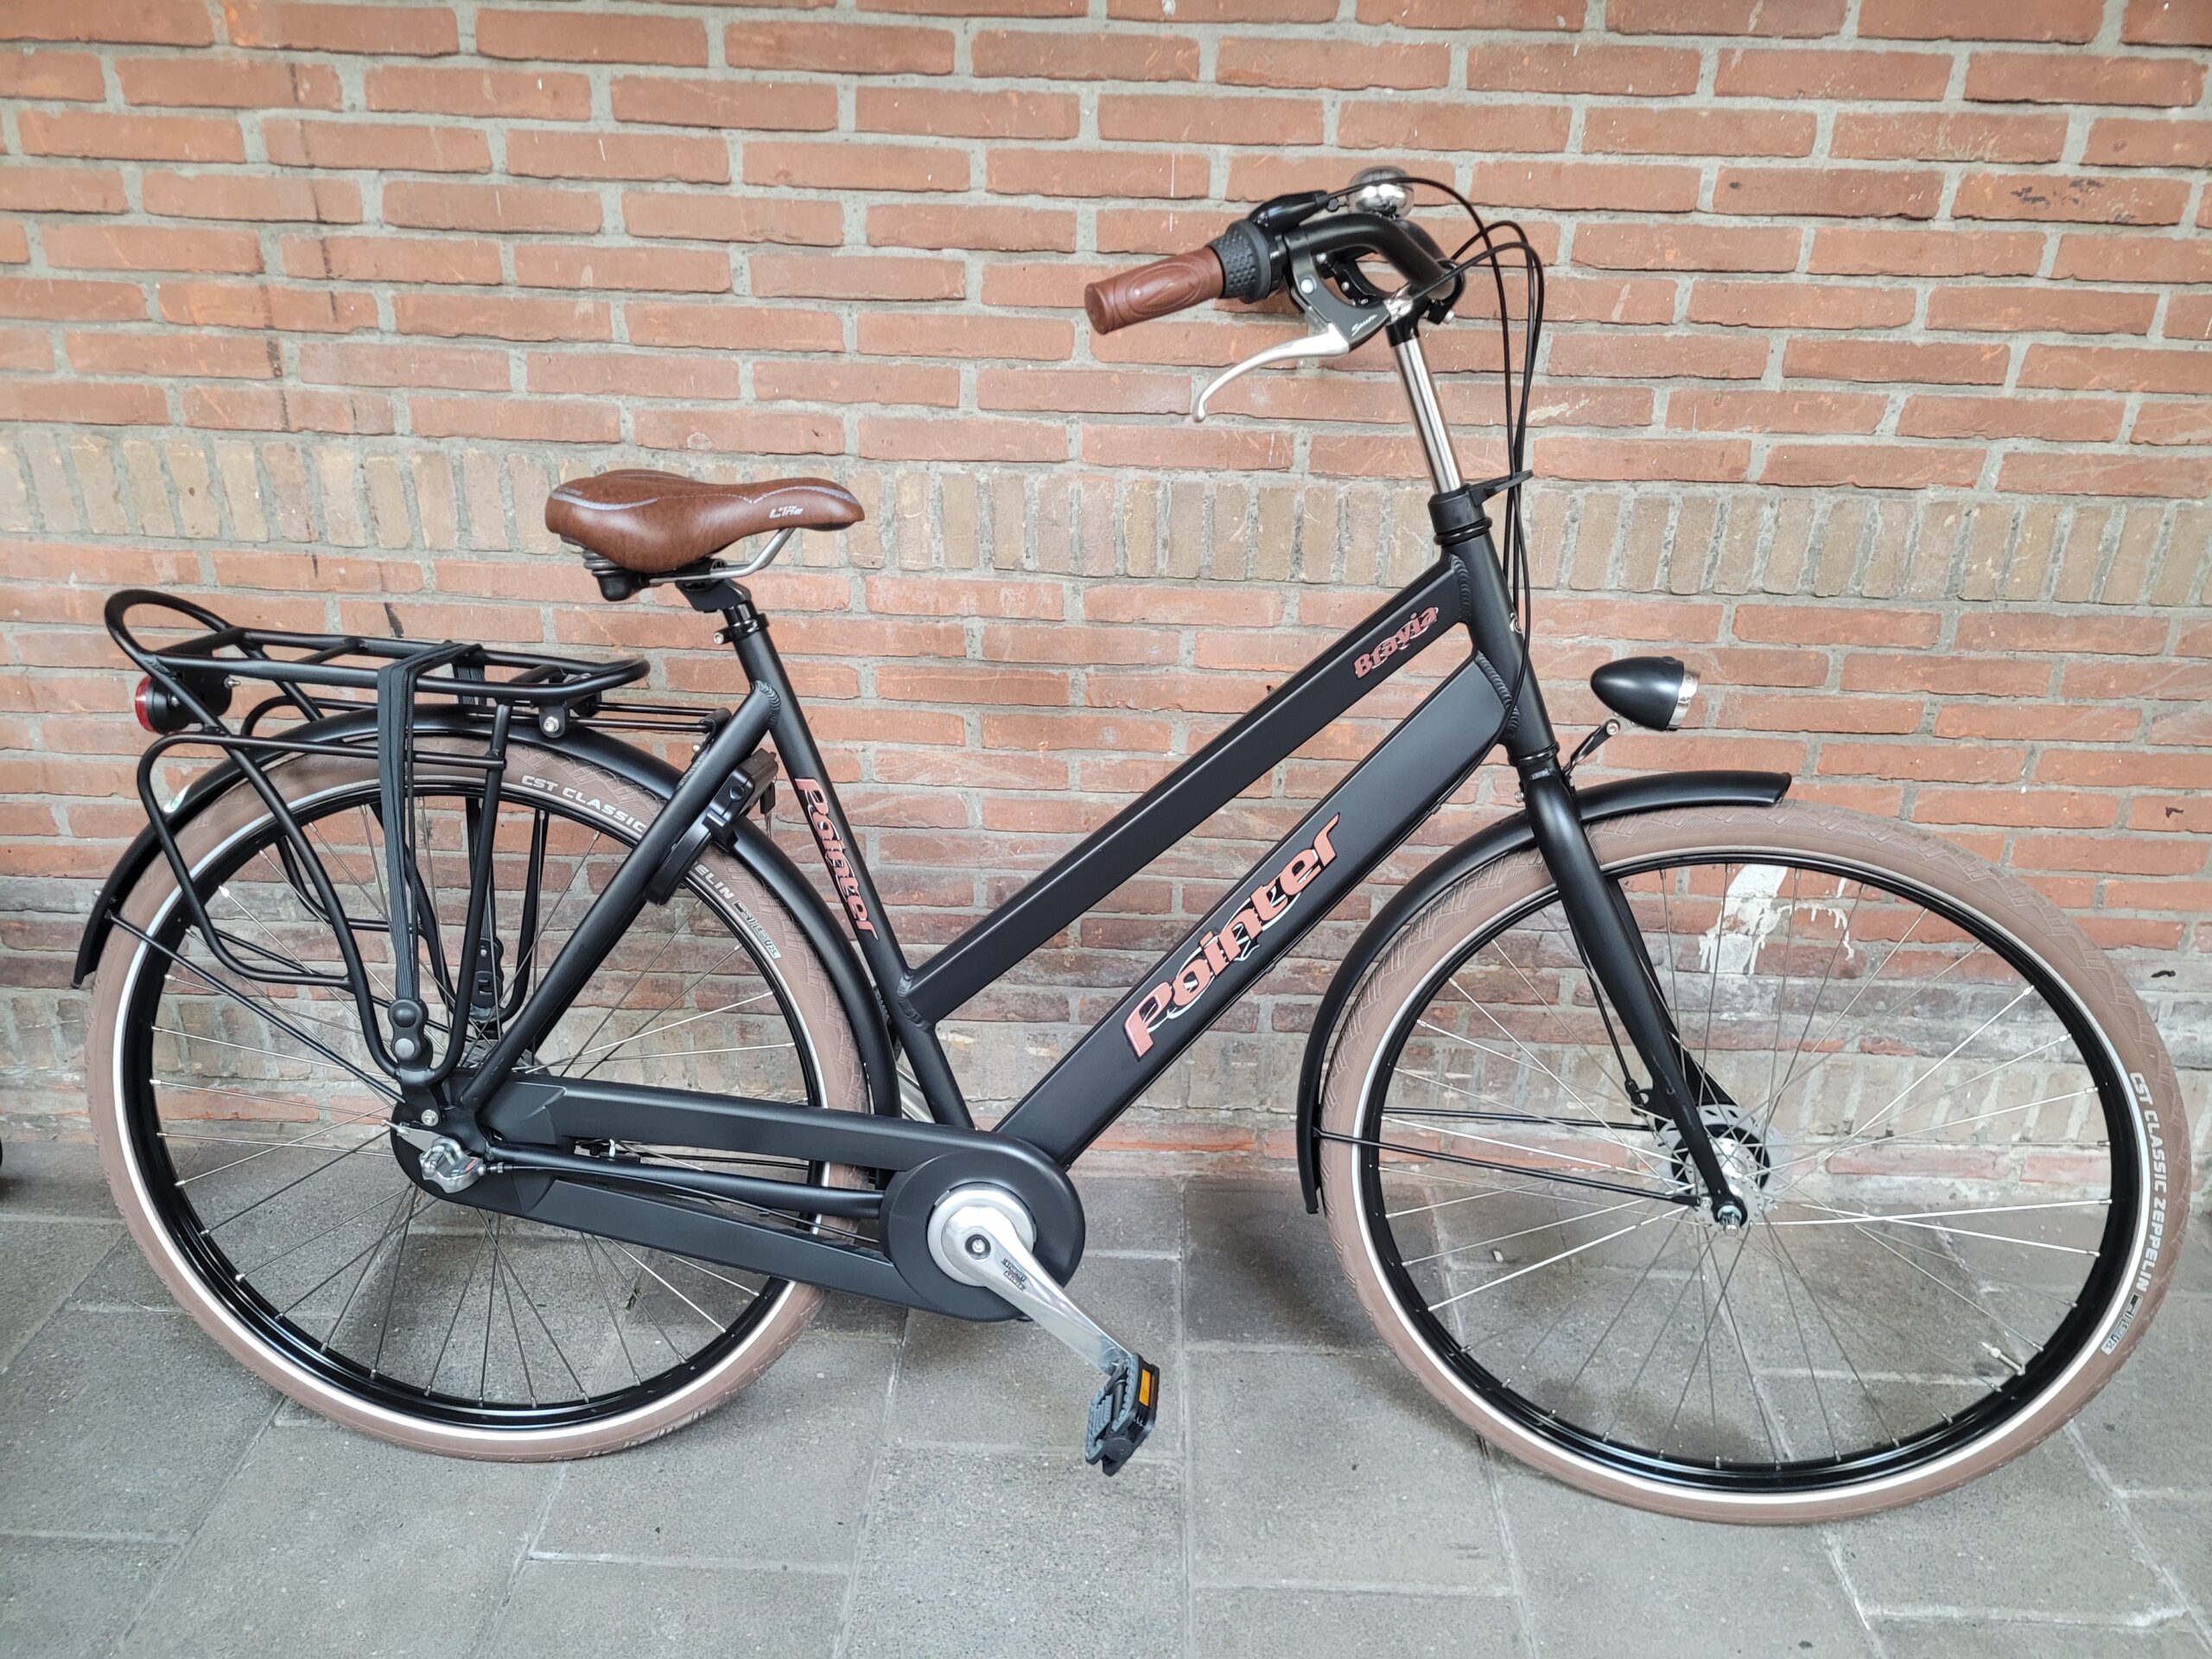 Fietspoint Ruiter - Uw one-stop fietsspecialist op Station Hoorn! - Pointer Bravia nieuwe damesfiets 53cm n3